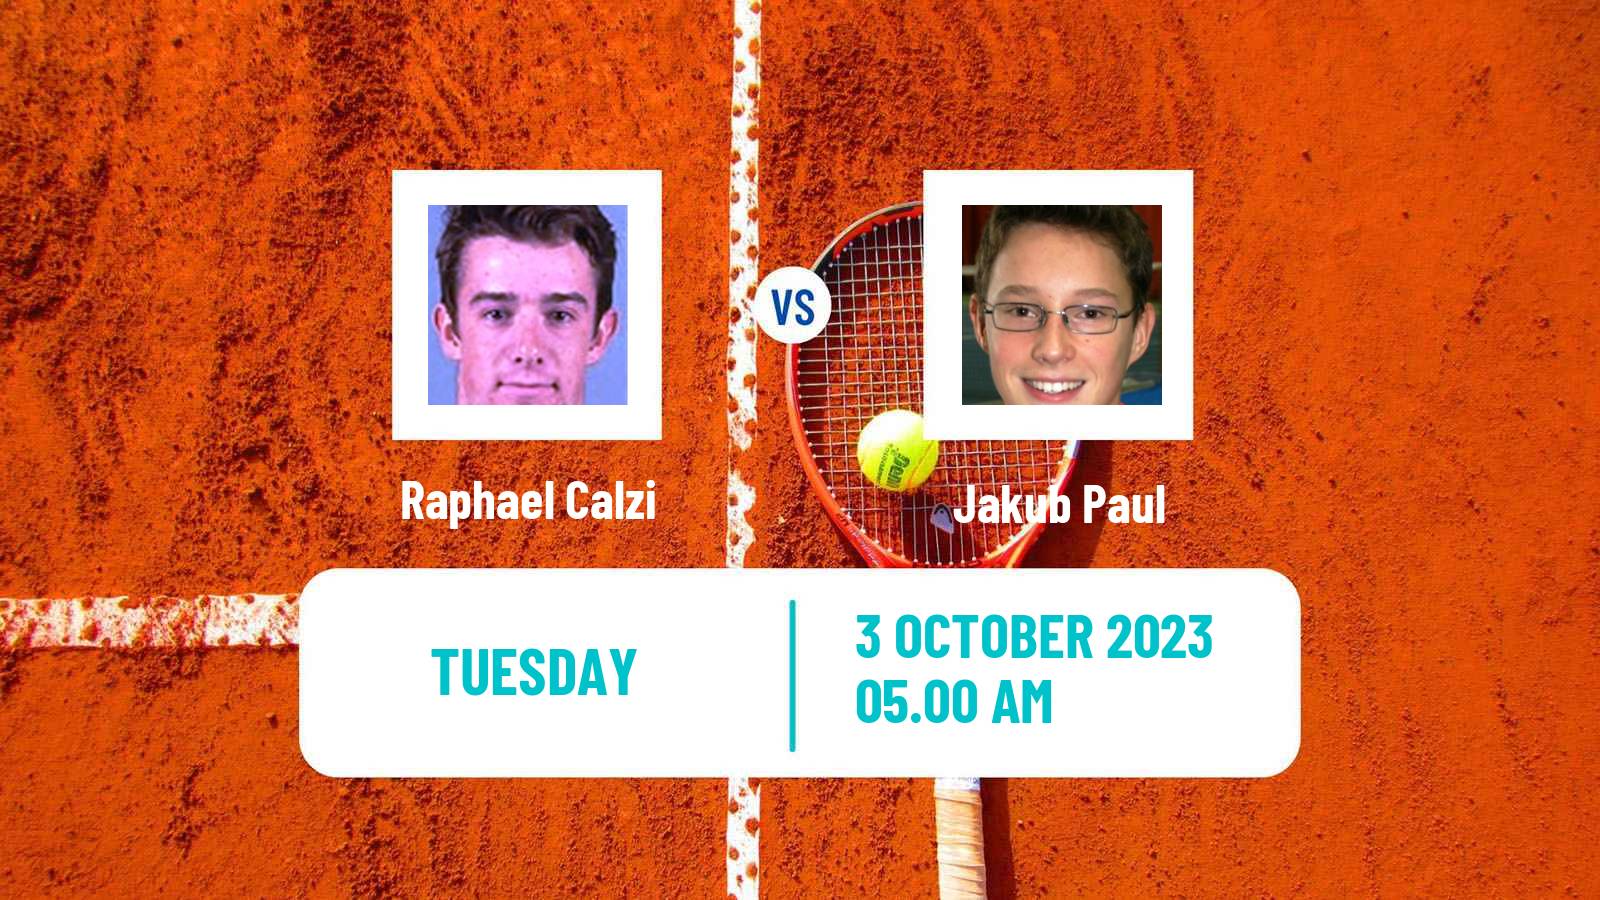 Tennis ITF M25 Nevers Men Raphael Calzi - Jakub Paul